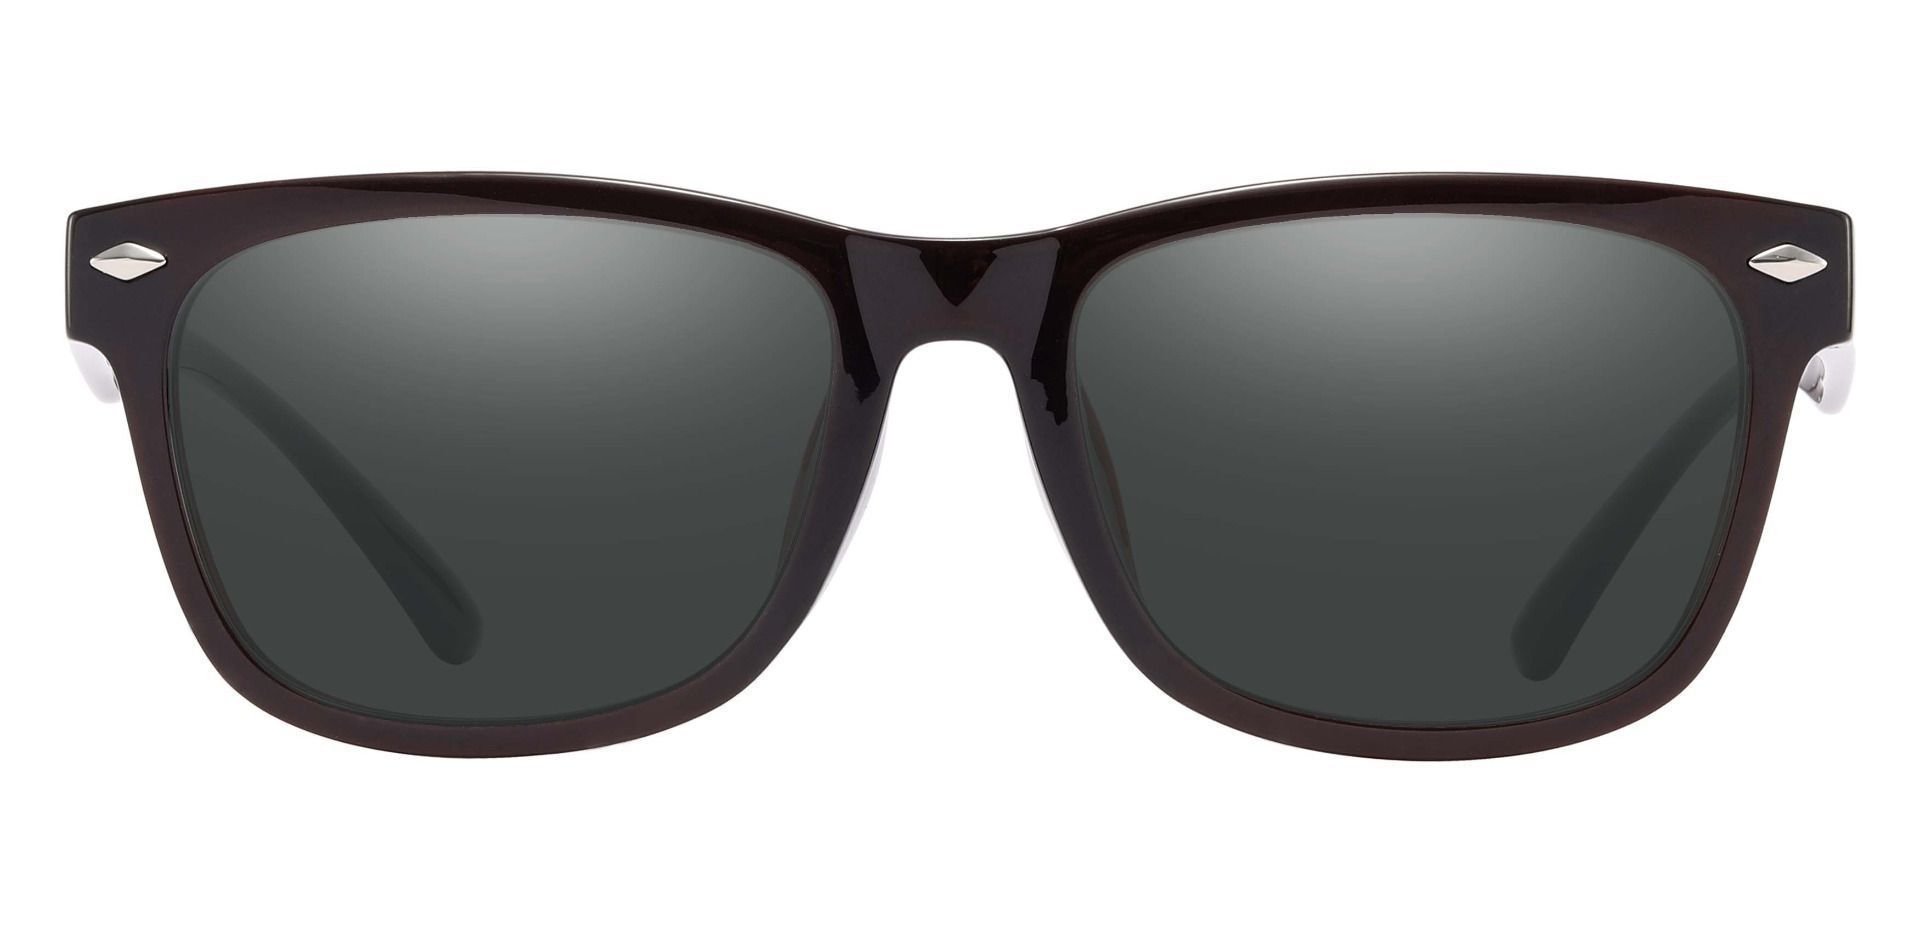 Shaler Square Progressive Sunglasses - Red Frame With Gray Lenses